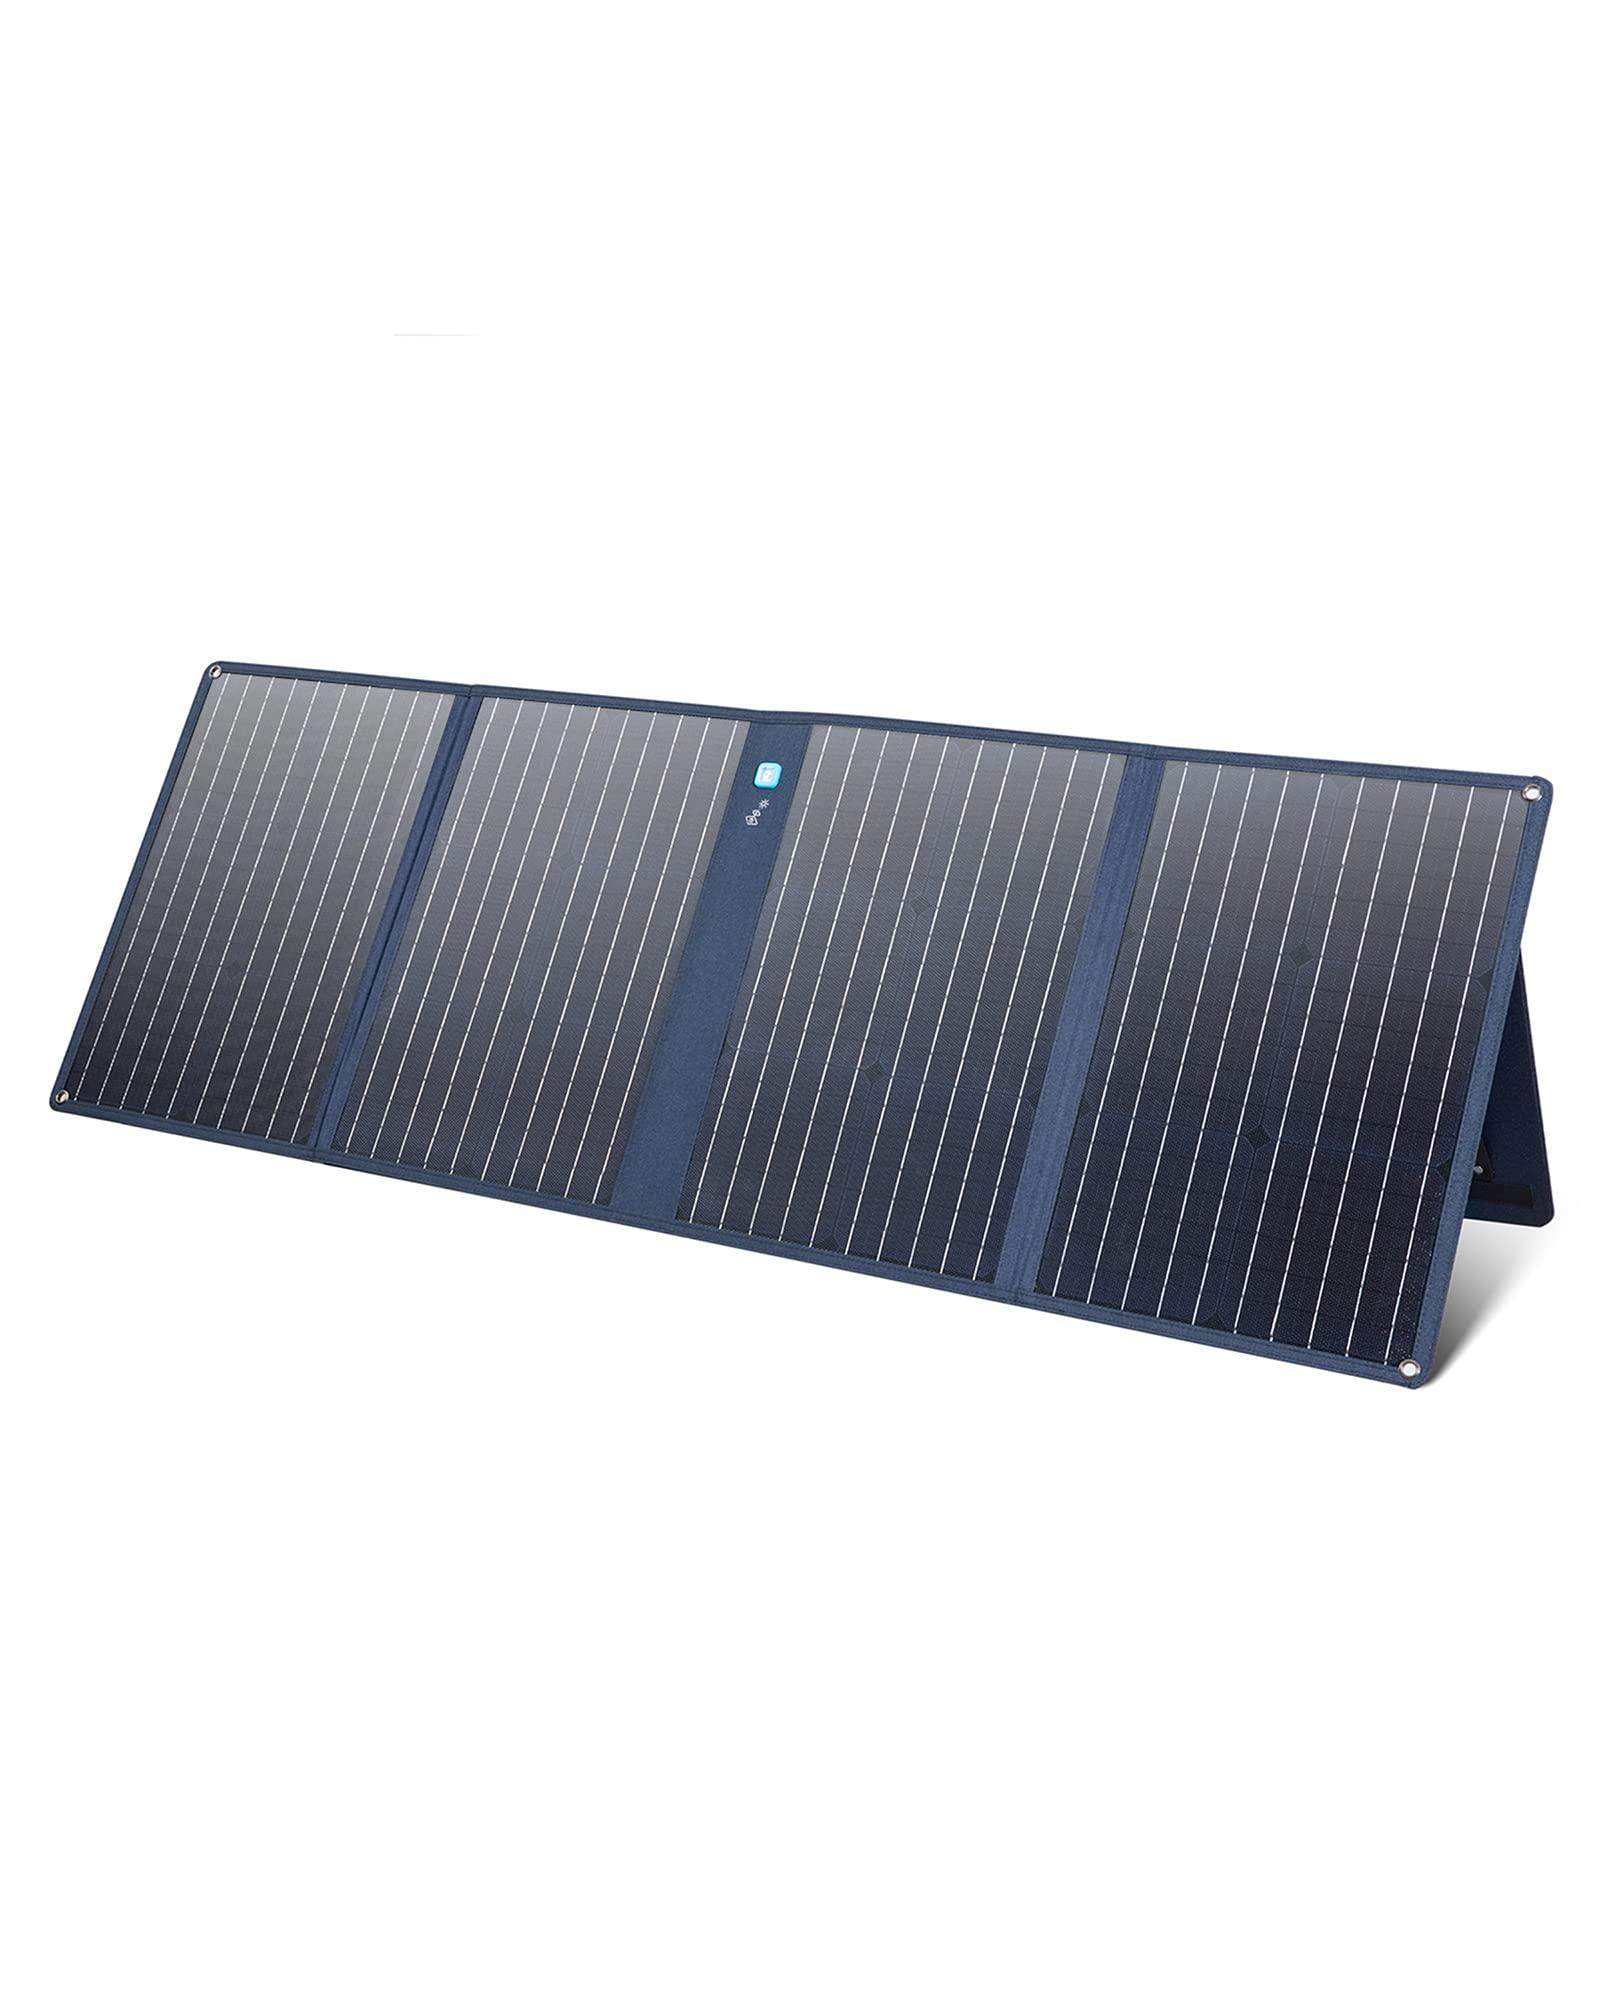 لوح طاقة شمسية 100 واط أنكر Anker 625 Solar Panel With Adjustable KickStand